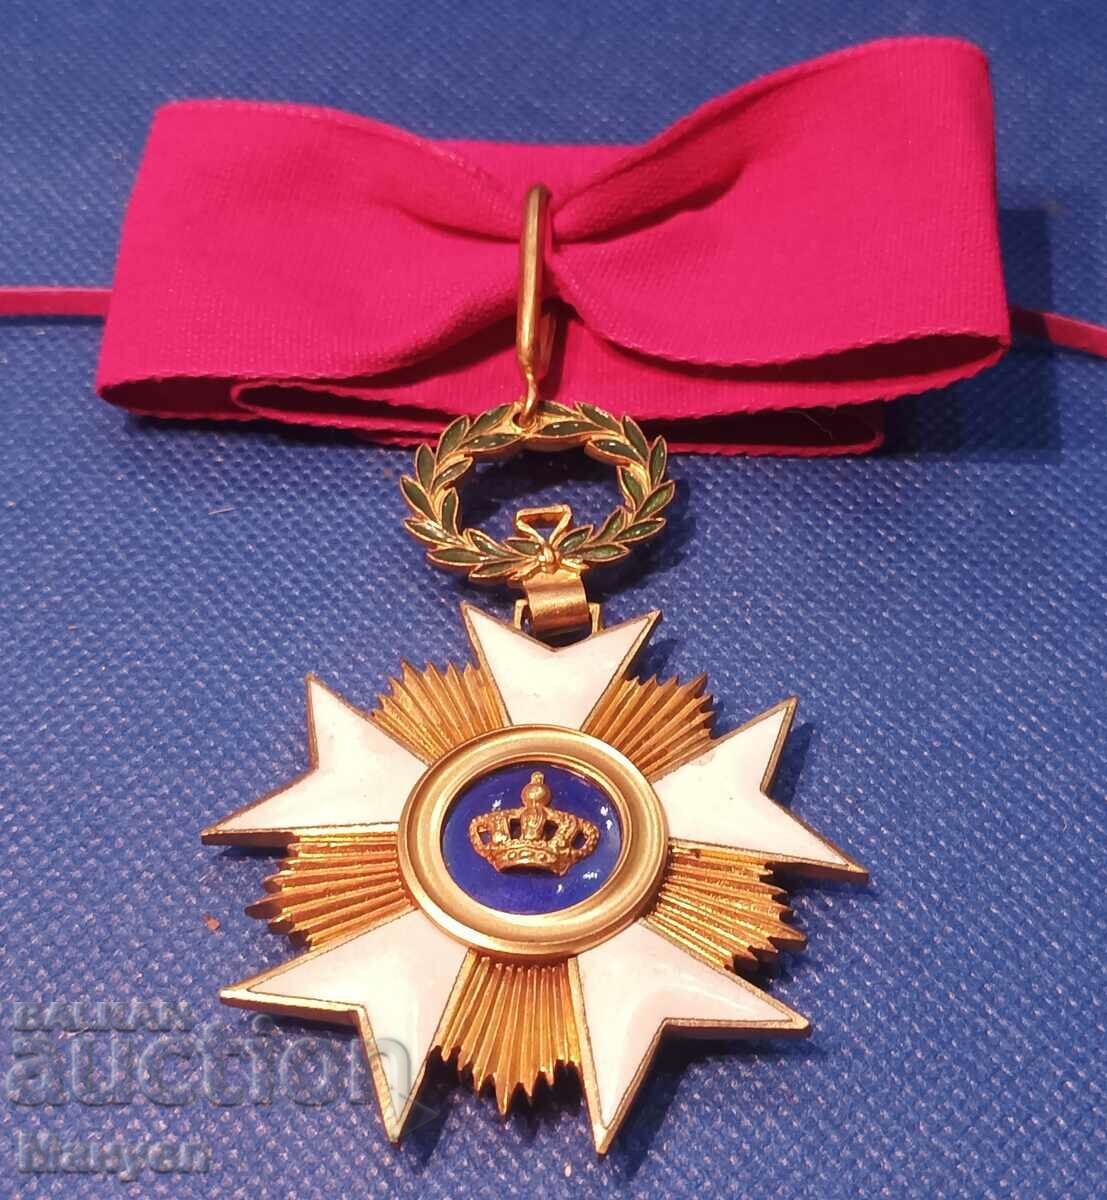 Βασίλειο του Βελγίου "Order of the Crown" Commander III St for shi